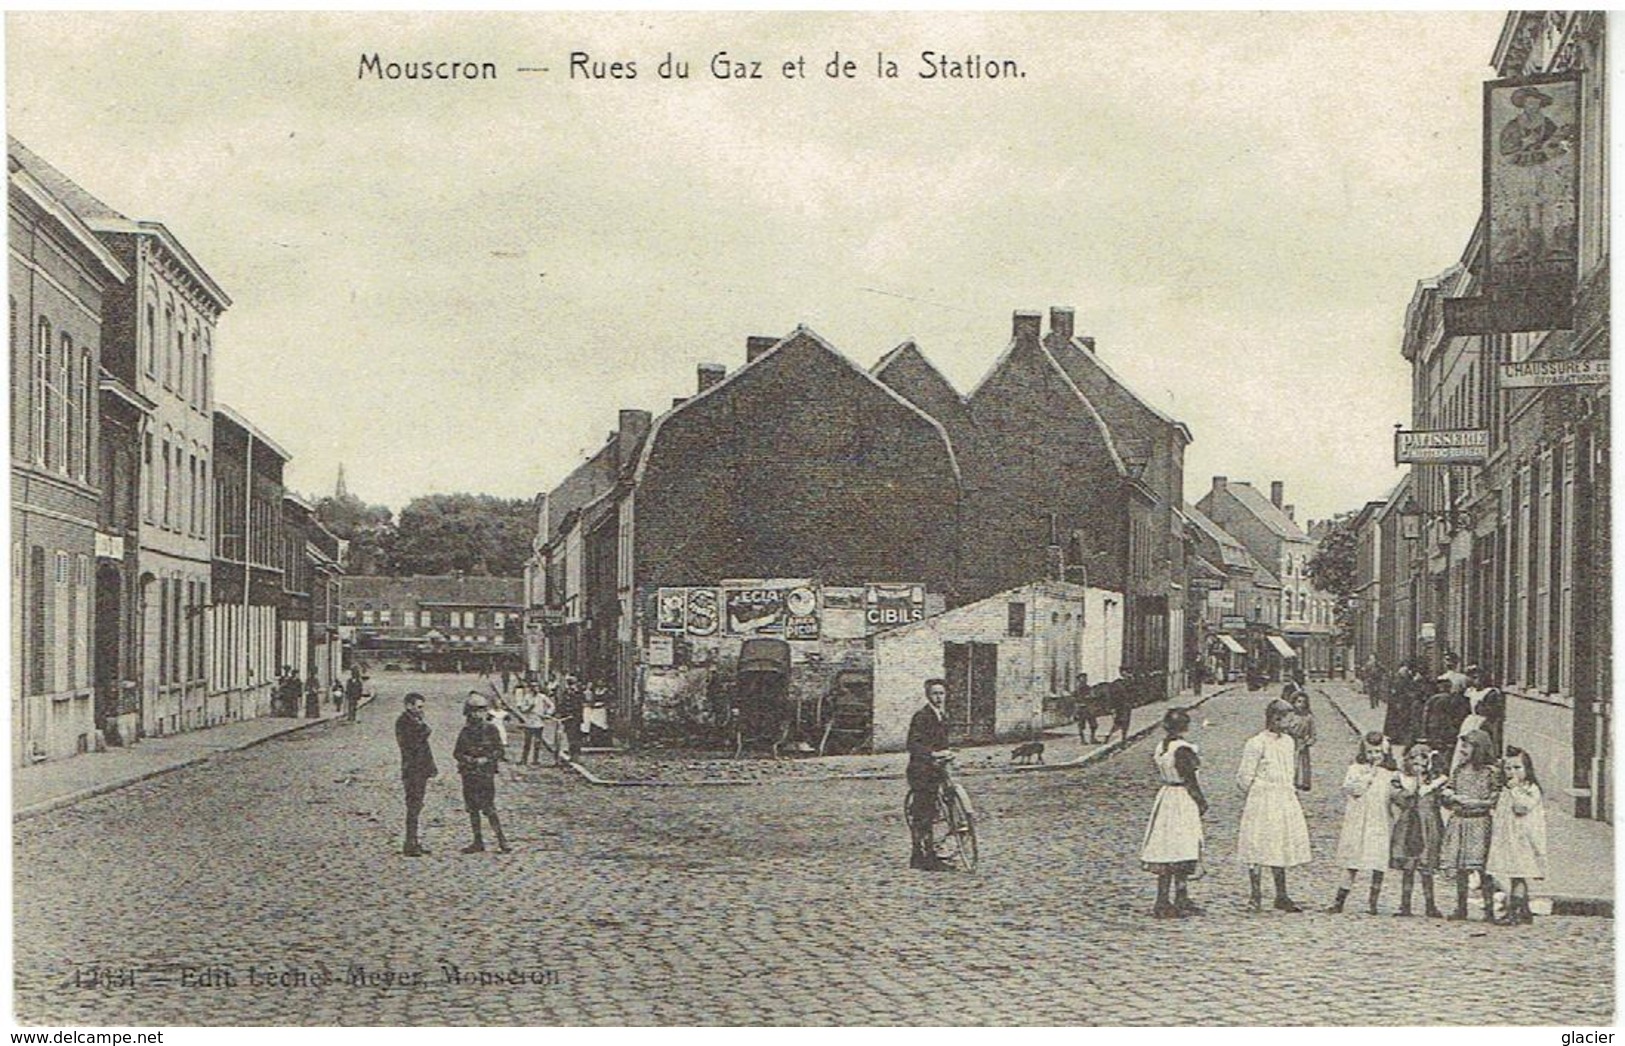 MOUSCRON - Rues Du Gaz Et De La Station - N° 12631 Edit. Lèches-Meyer, Mouscron - Moeskroen